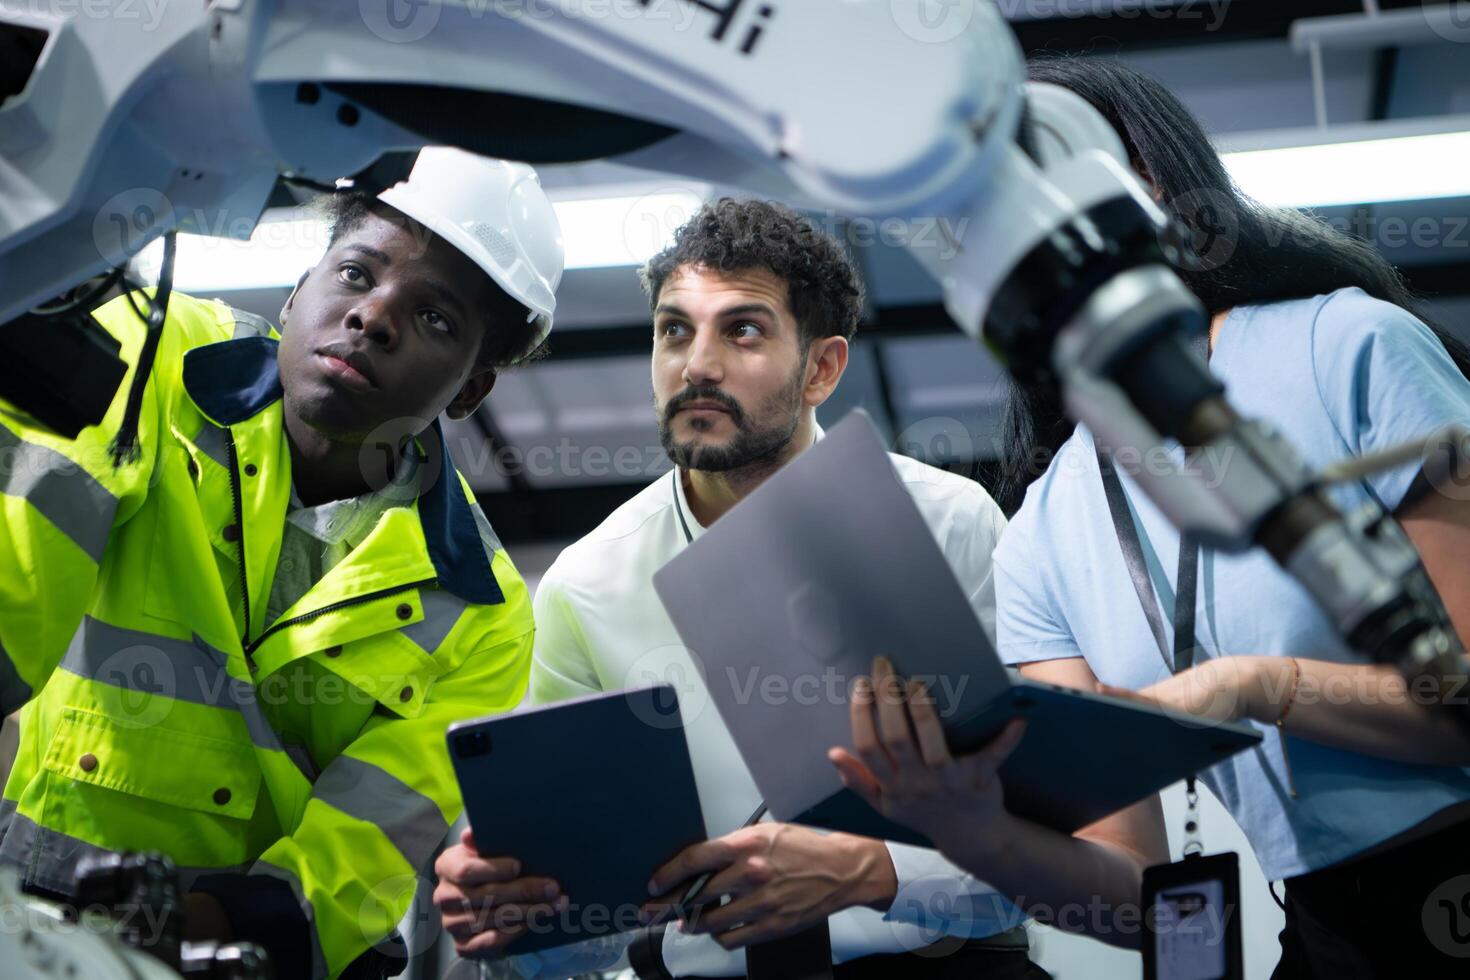 técnicos son presentando industrial mano robots a persona de negocios de fábrica industria quien será utilizar ellos en Gran escala complejo fabricación operaciones. foto